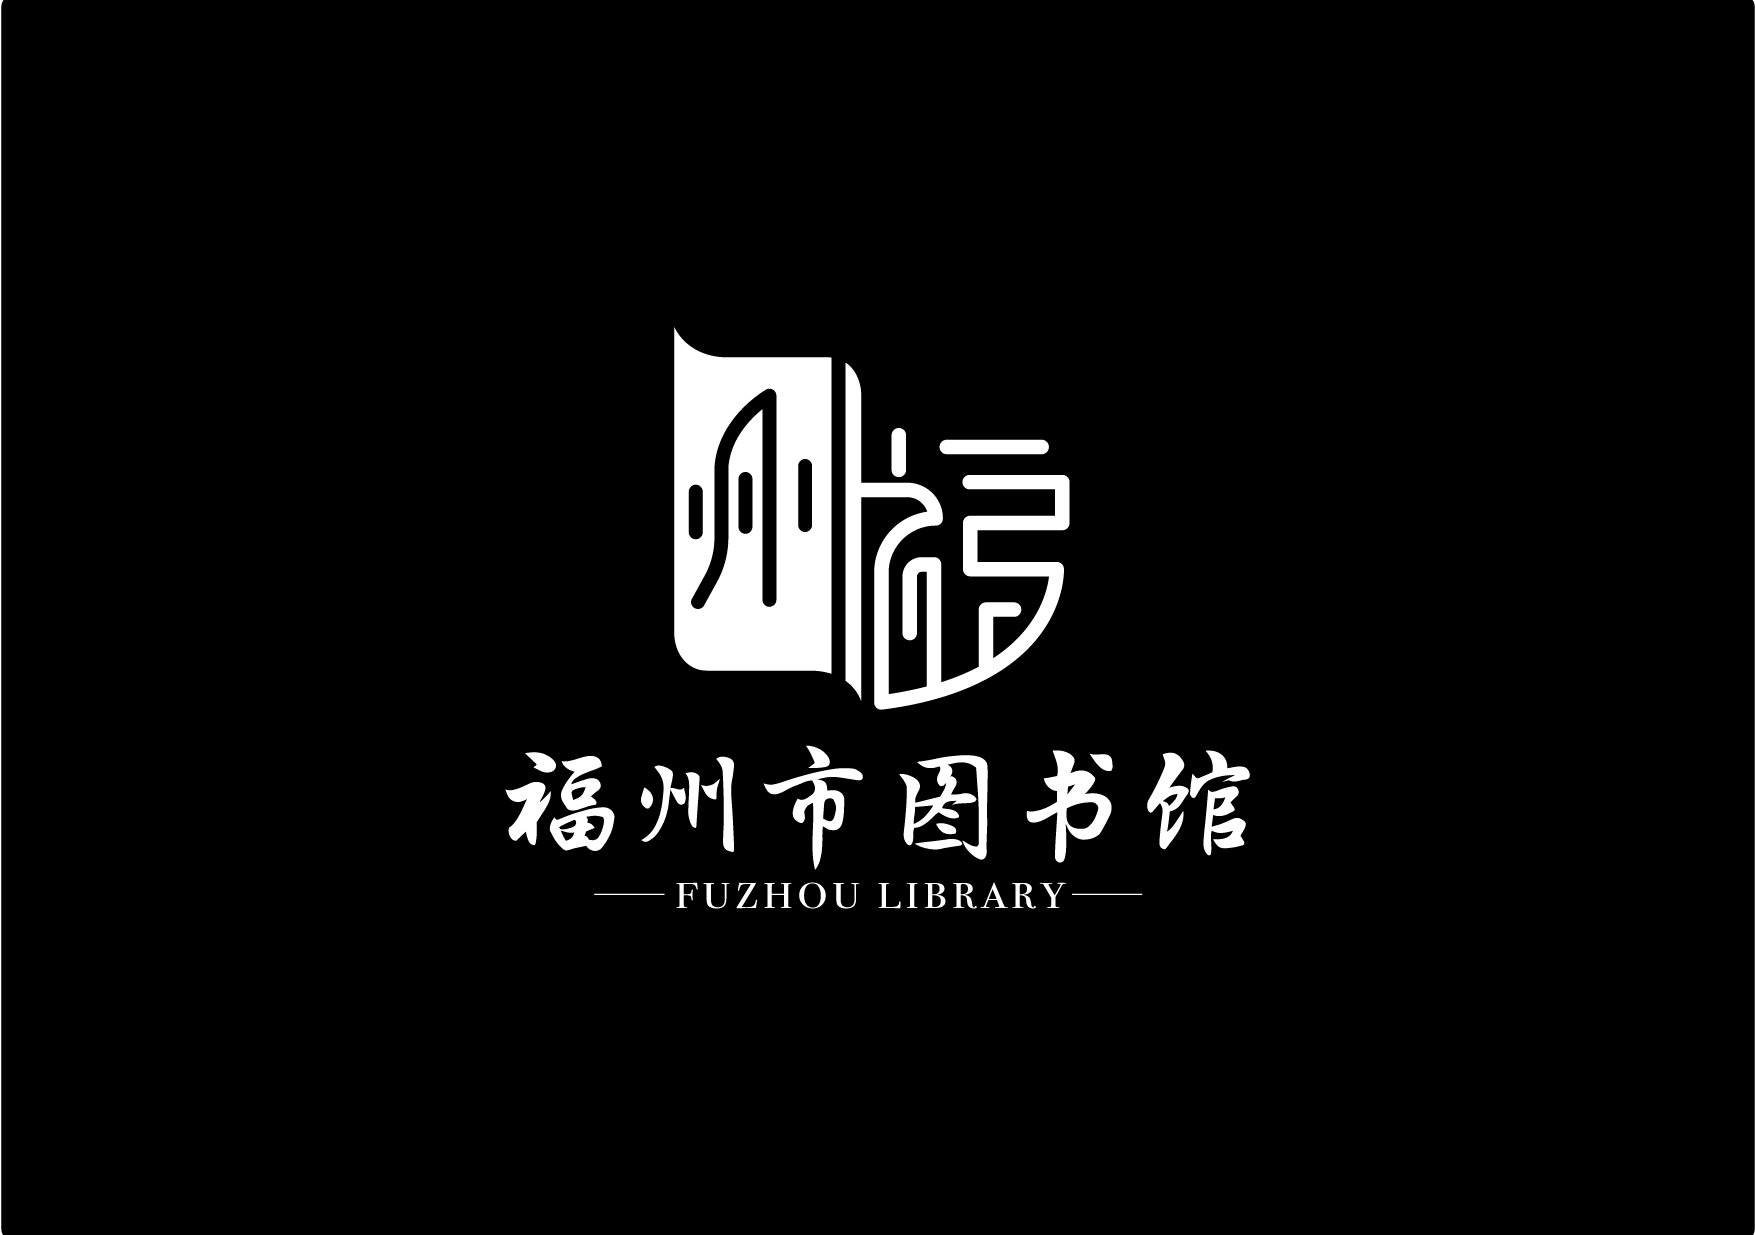 图书馆的标志设计创作9粉丝6255杭州 